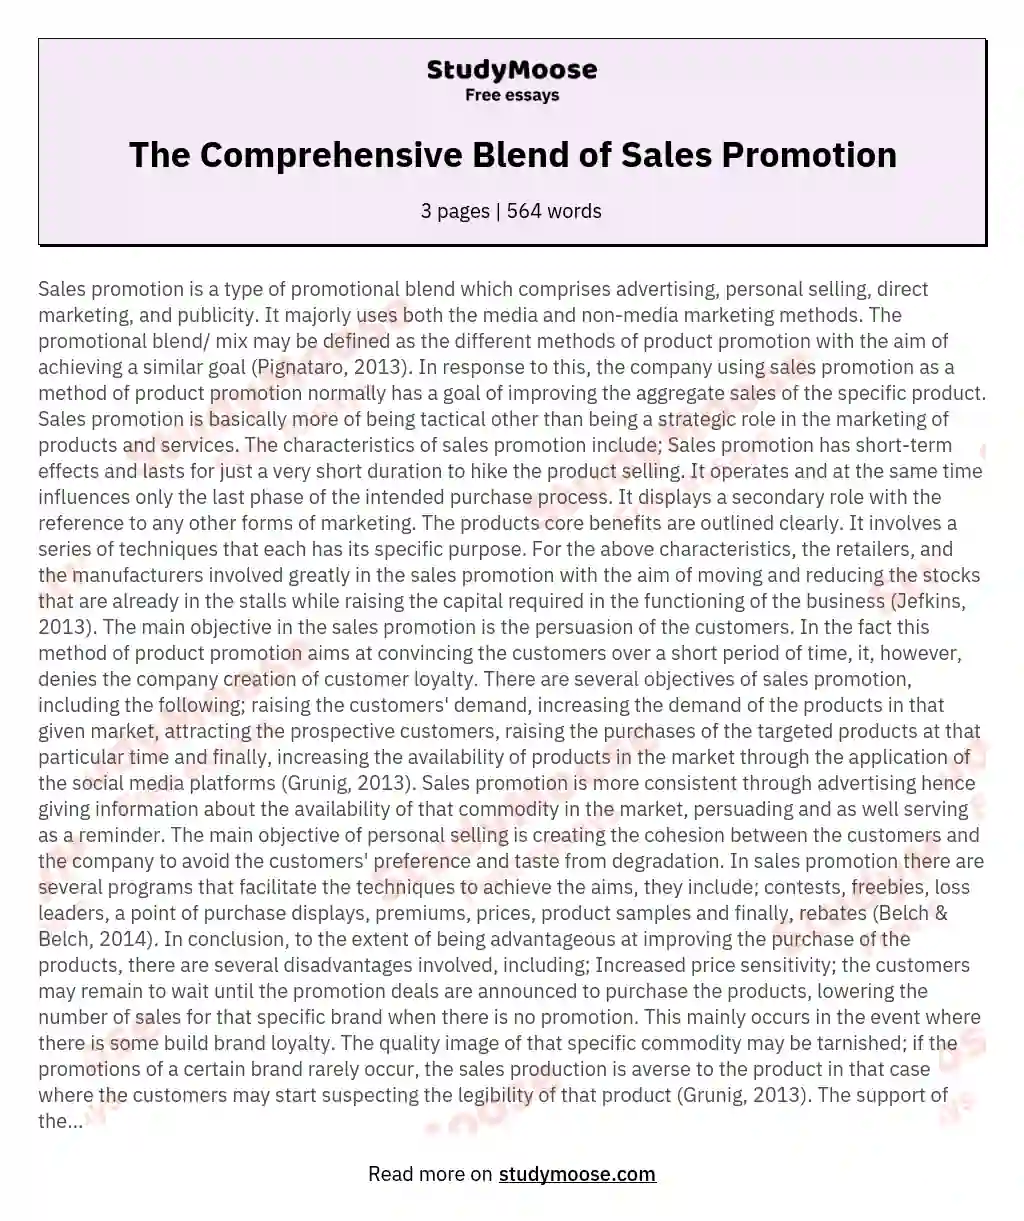 The Comprehensive Blend of Sales Promotion essay